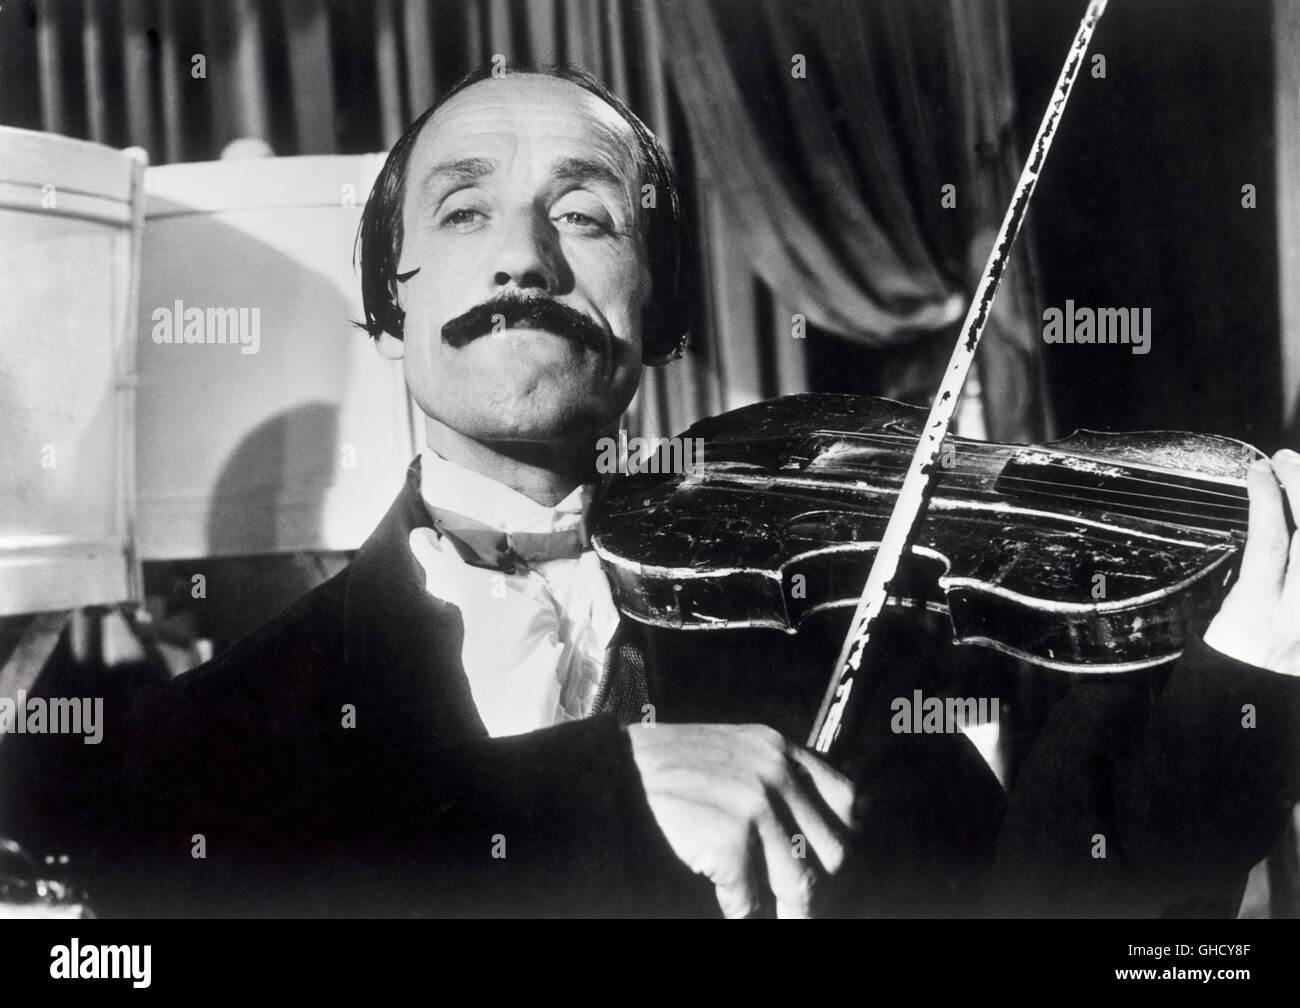 IL MONDO DI NOTTE Italien 1959 Luigi Vanzi violoniste dans une scène de l'italien musique documentaire il mondo di Notte/par nuit. Regie : Luigi Vanzi Banque D'Images